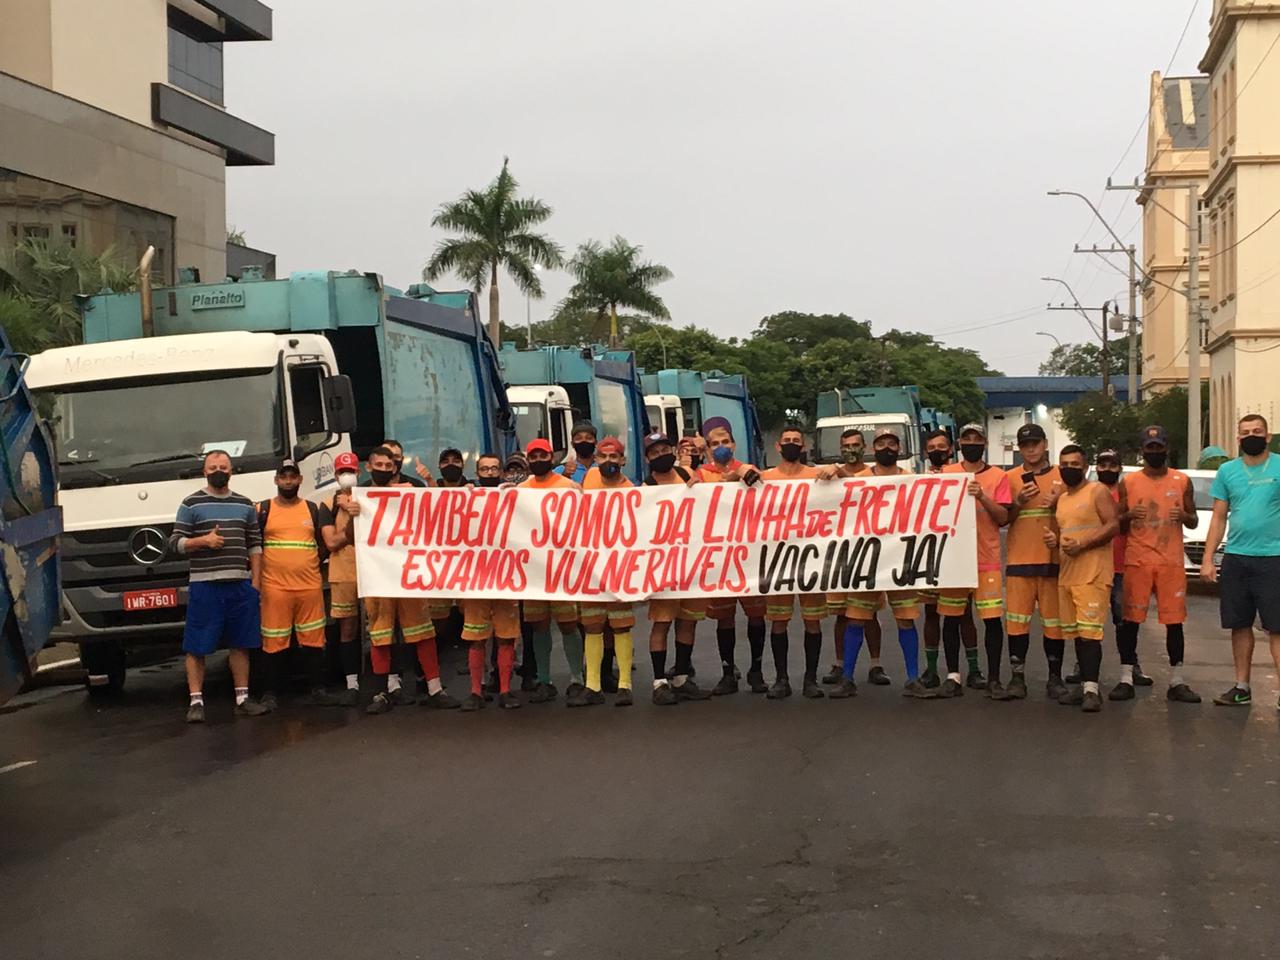 Garis de São Leopoldo fazem protesto pedindo por vacina